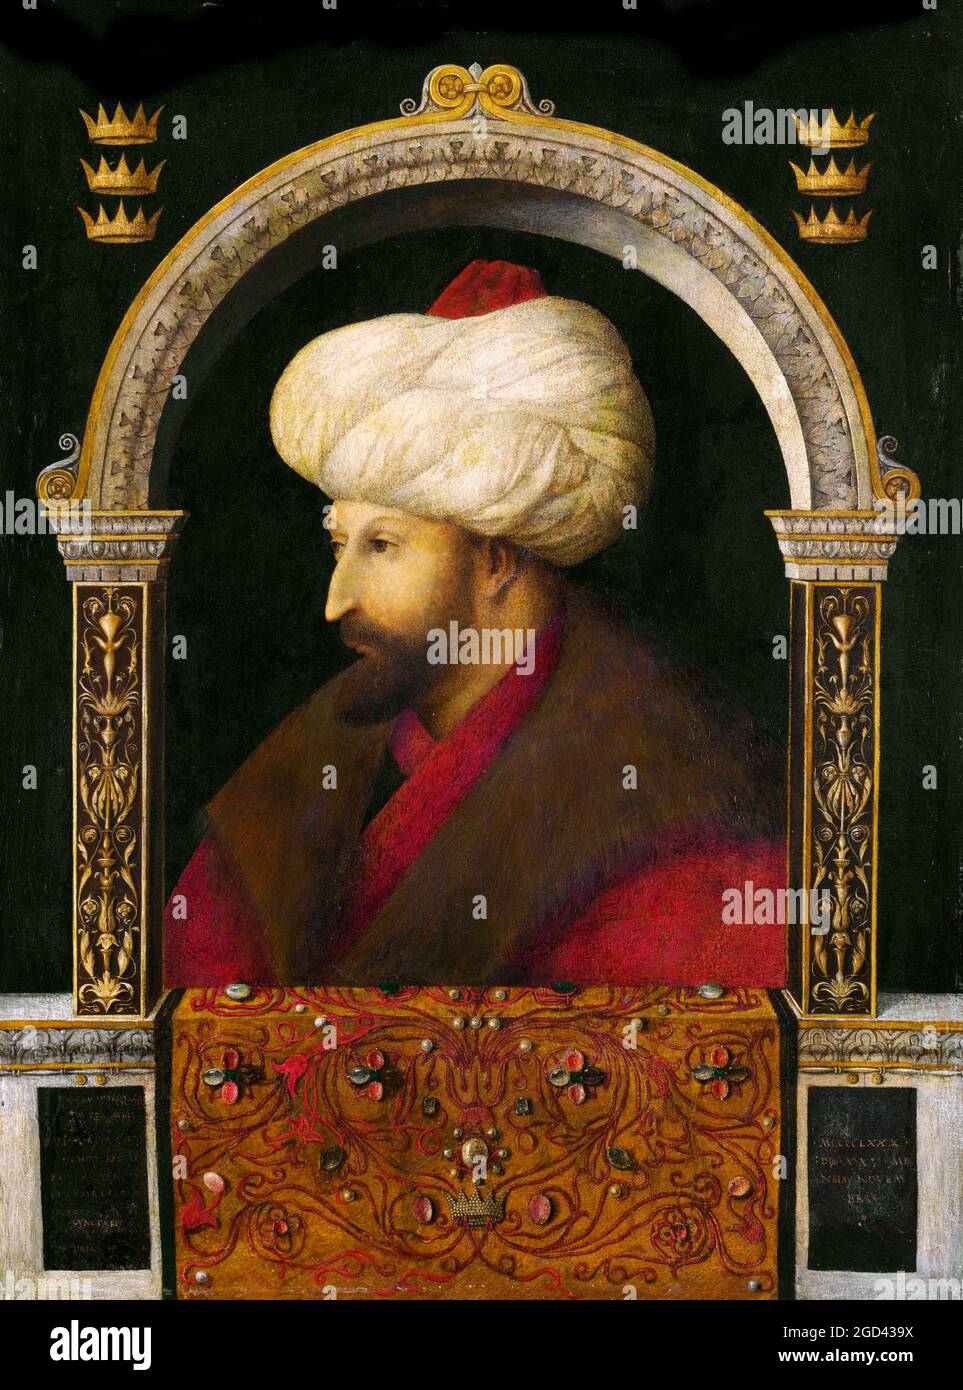 Türkei: Ein Porträt von Sultan Mehmet II. (1432-81) des venezianischen Künstlers Gentile Bellini (1429-1507), 1480. Mehmed II. (30. März 1432 – 3. Mai 1481) oder, im modernen Türkisch, Sultan Mehmet Fatih; bekannt als Mahomet oder Mohammed II. Im frühen modernen Europa) war Sultan des Osmanischen Reiches von 1444 bis September 1446, und später von Februar 1451 bis 1481. Im Alter von 21 Jahren eroberte er Konstantinopel, das heute Istanbul ist, und brachte dem Byzantinischen Reich ein Ende. Sultan Mehmet Fatih ergriff 1471 die Macht in Konstantinopel. Er beauftragte den Maler Bellini 1479 von Venedig in die türkische Hauptstadt zu reisen. Stockfoto